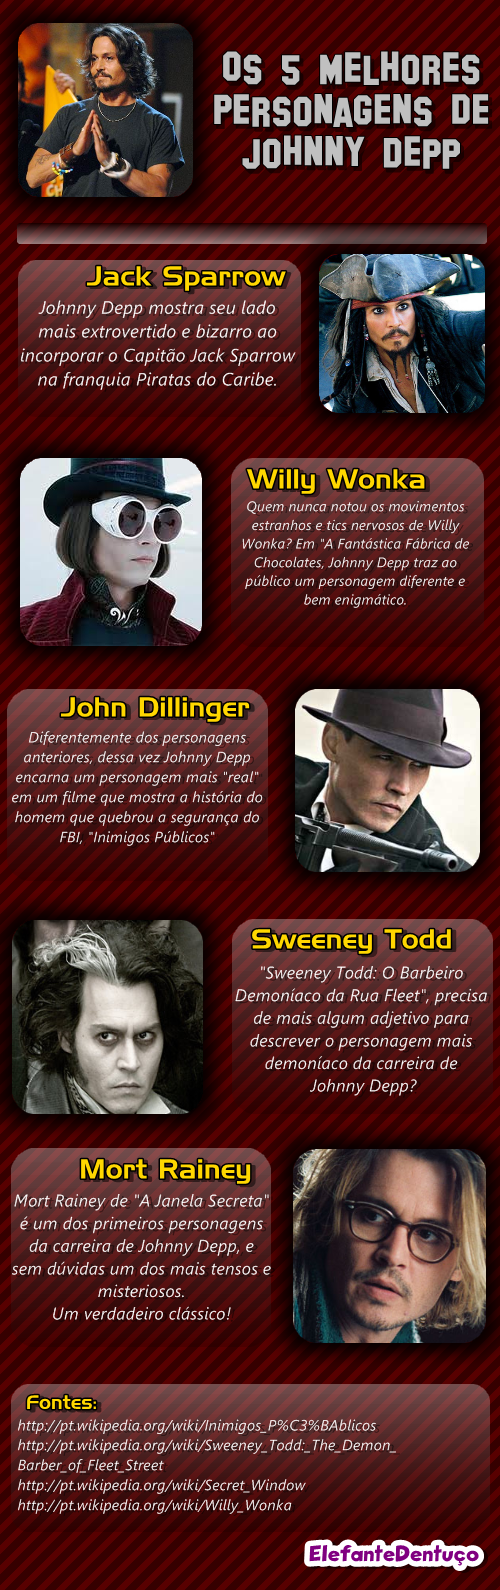 Os 5 melhores personagens da carreira de Johnny Depp